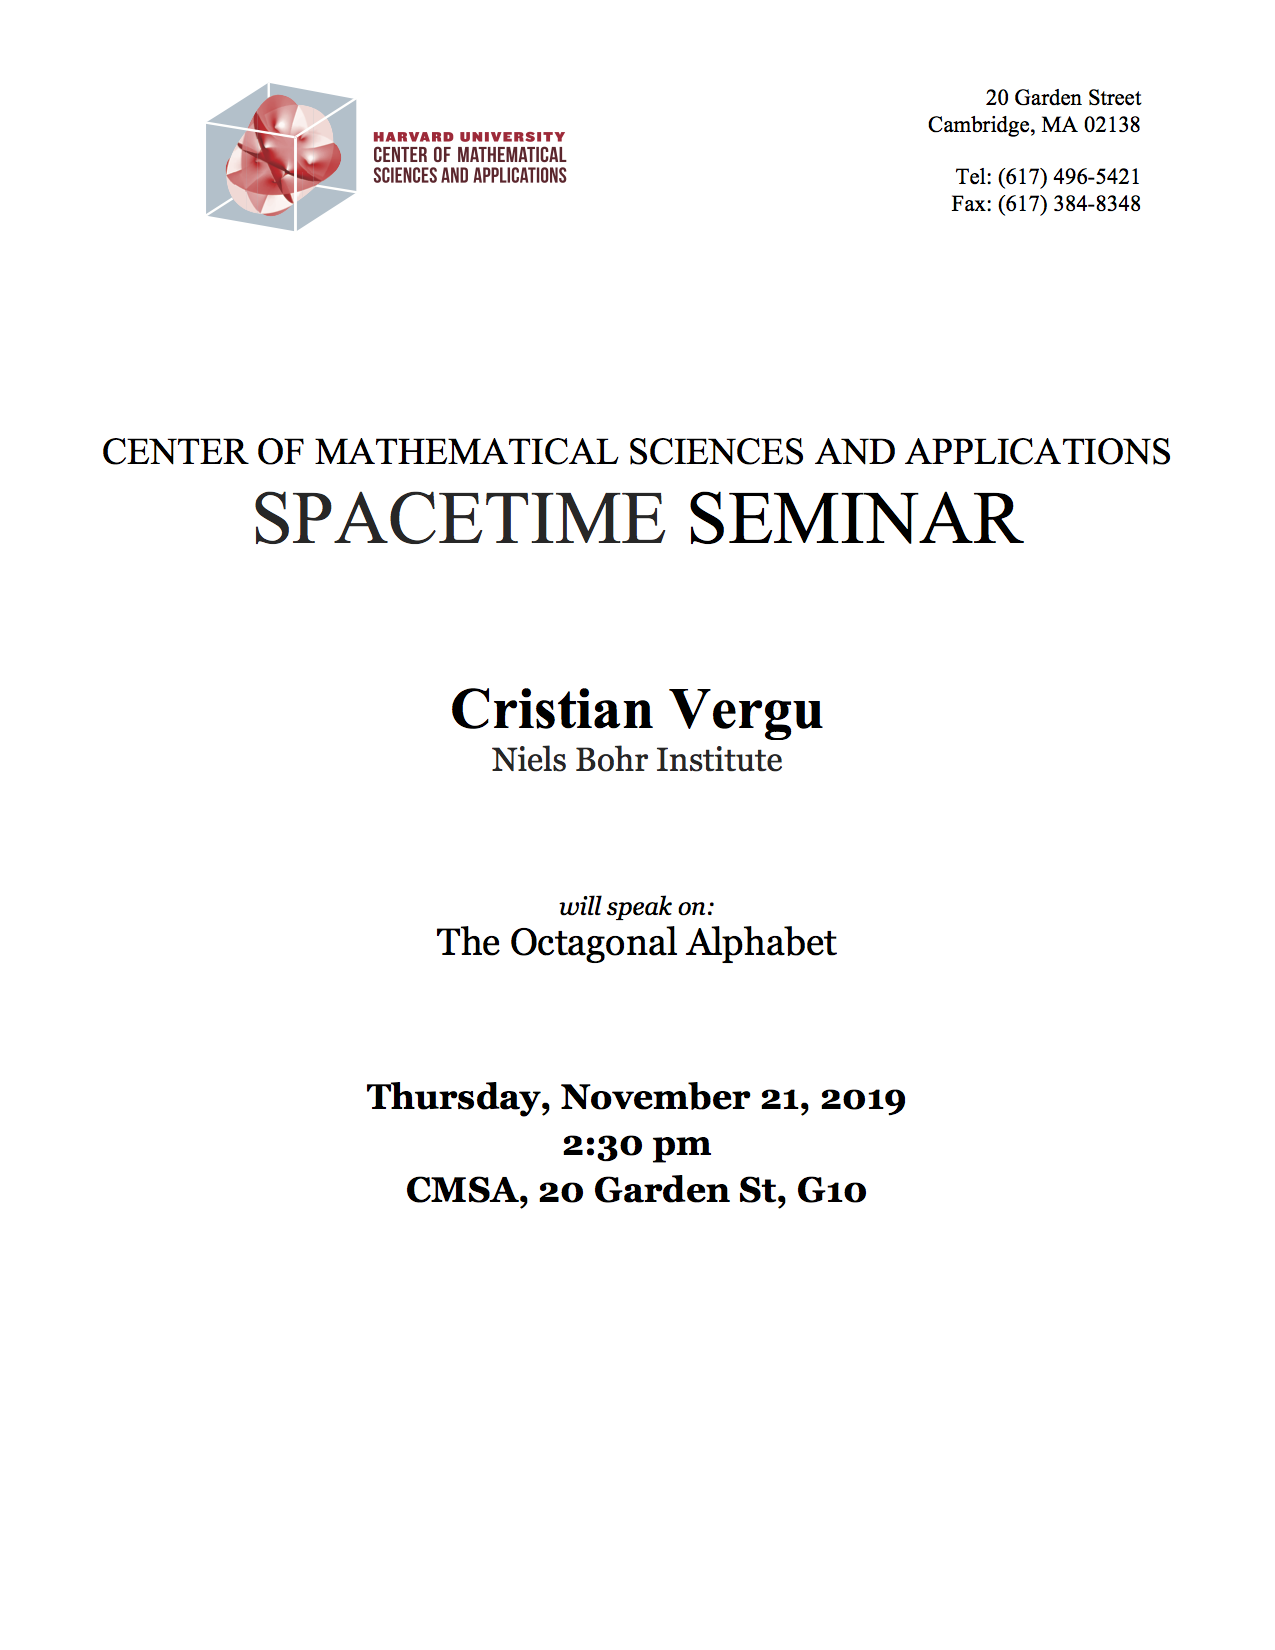 11/21/2019 Spacetime Seminar